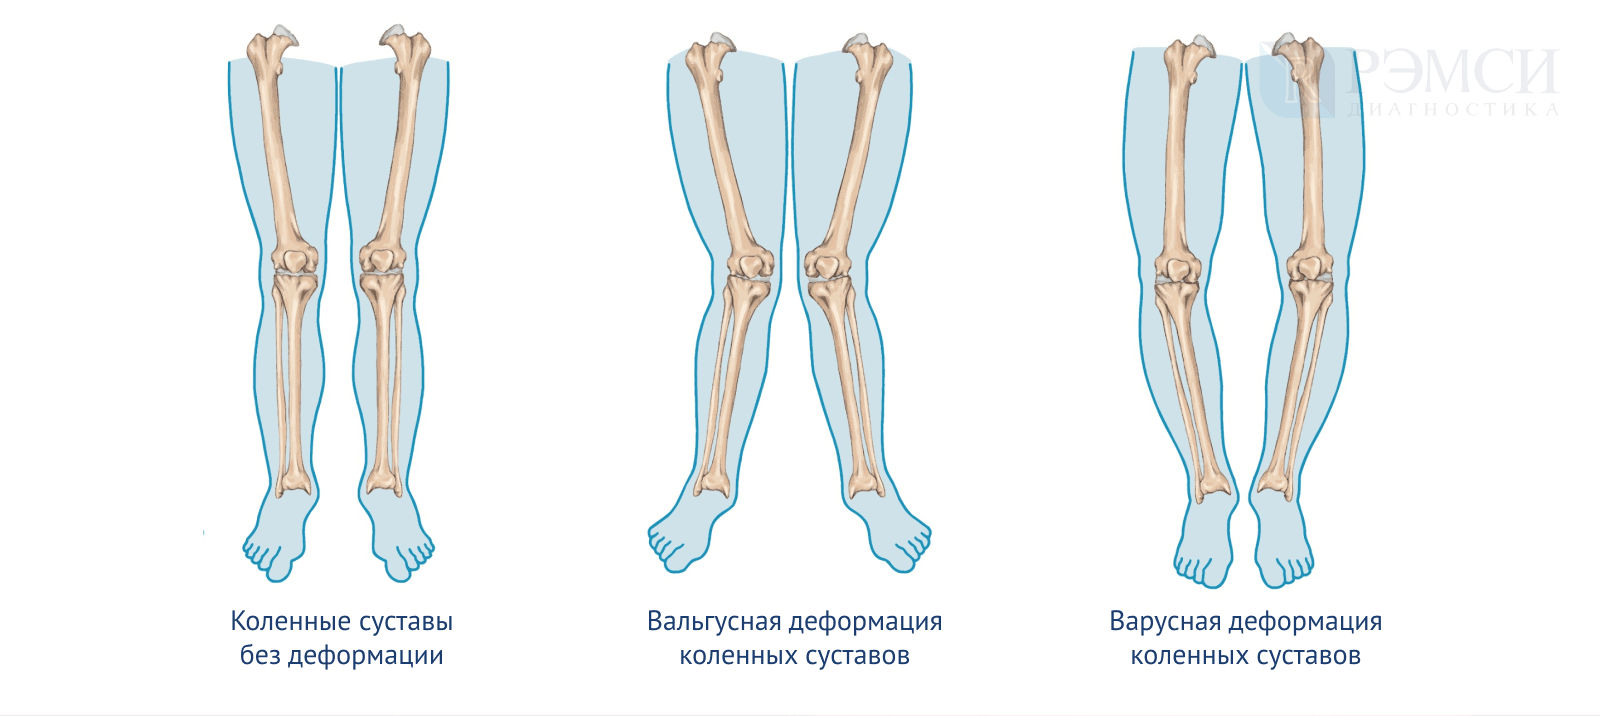 Какие должны быть ноги. Варусная деформация оси нижних конечностей. Х-образная деформация нижней конечности вальгусная. Вальгусная и варусная деформация ног. Варусная деформация коленных суставов.